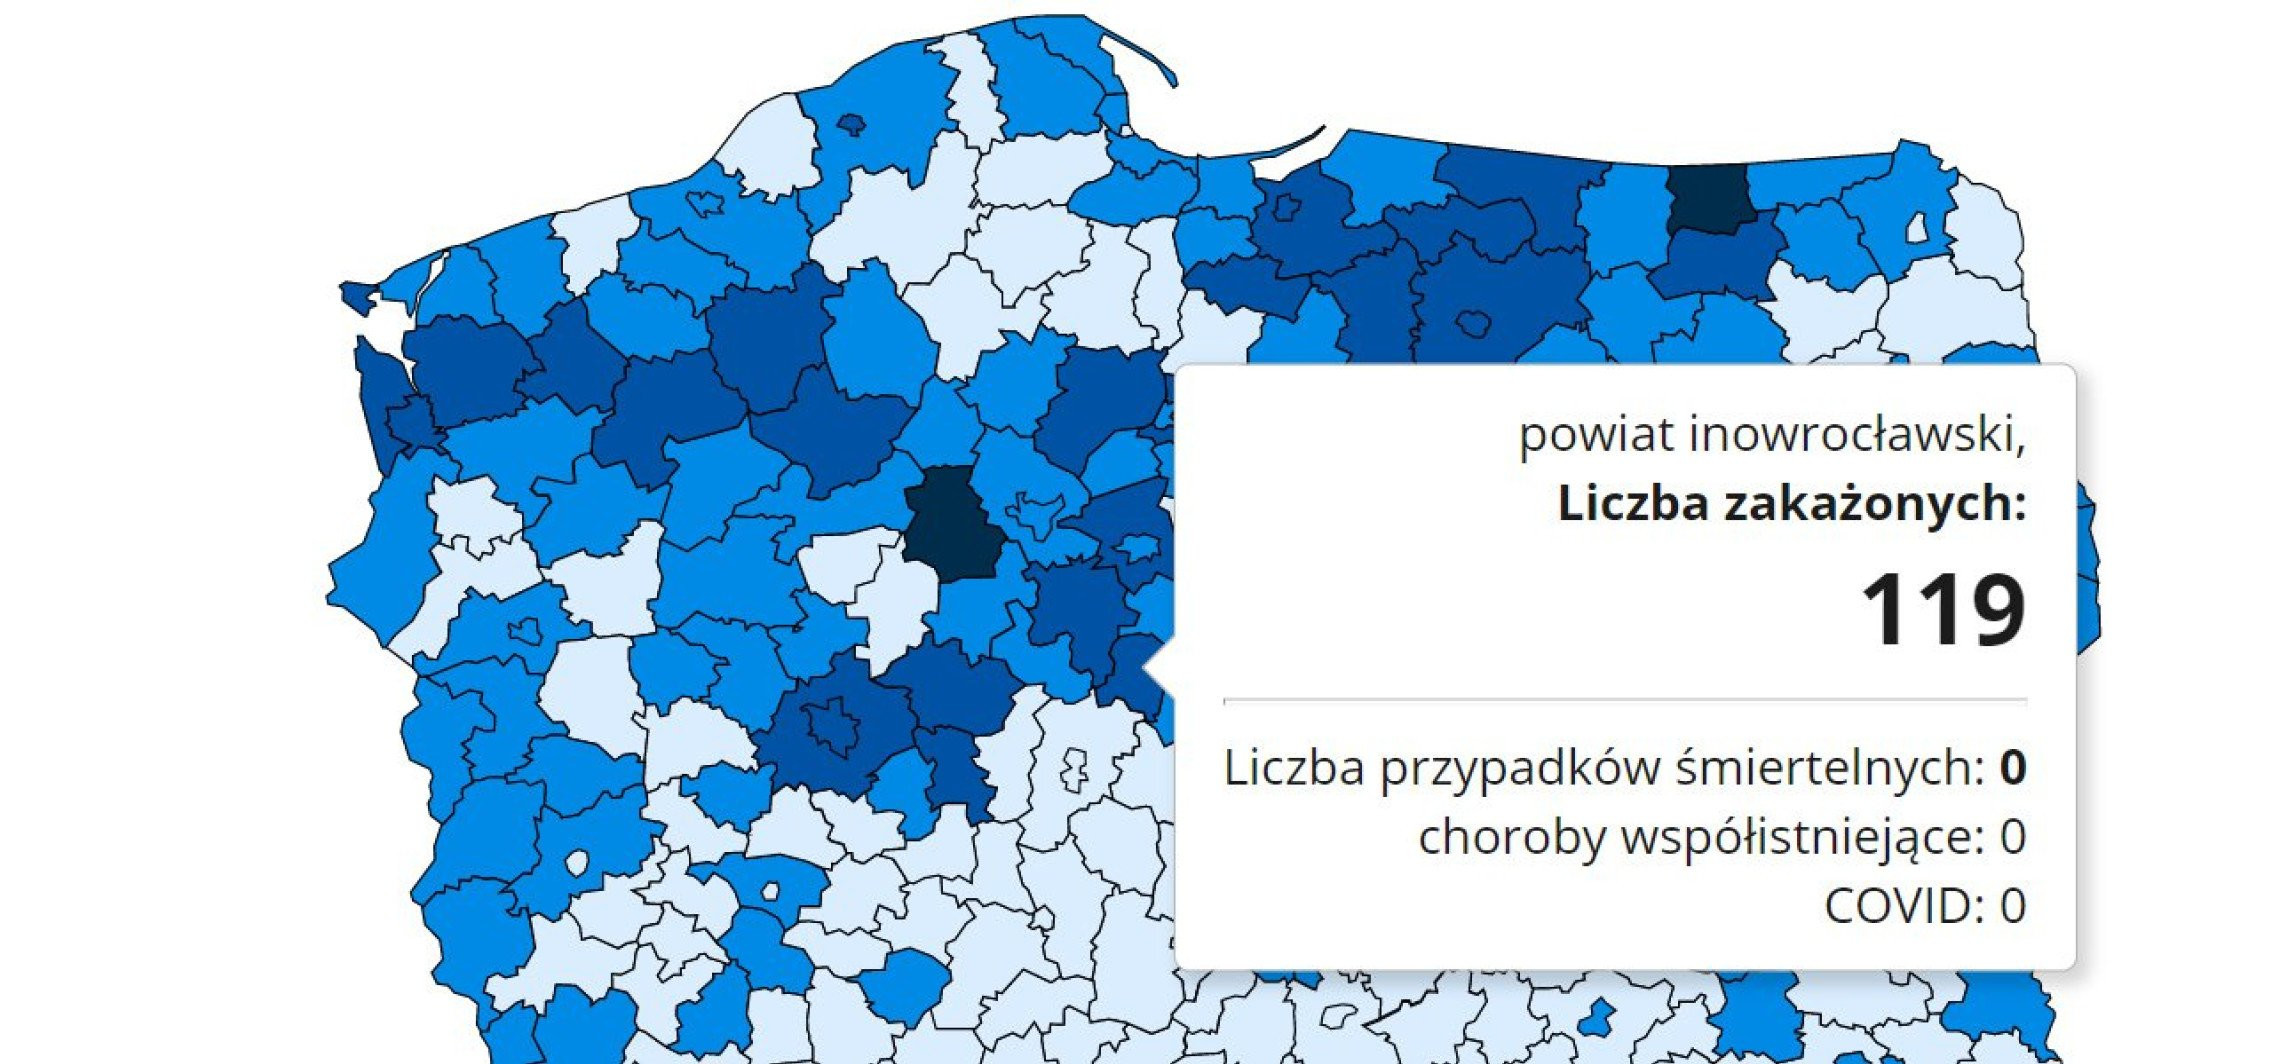 Inowrocław - Niepokojące dane o nowych zakażeniach